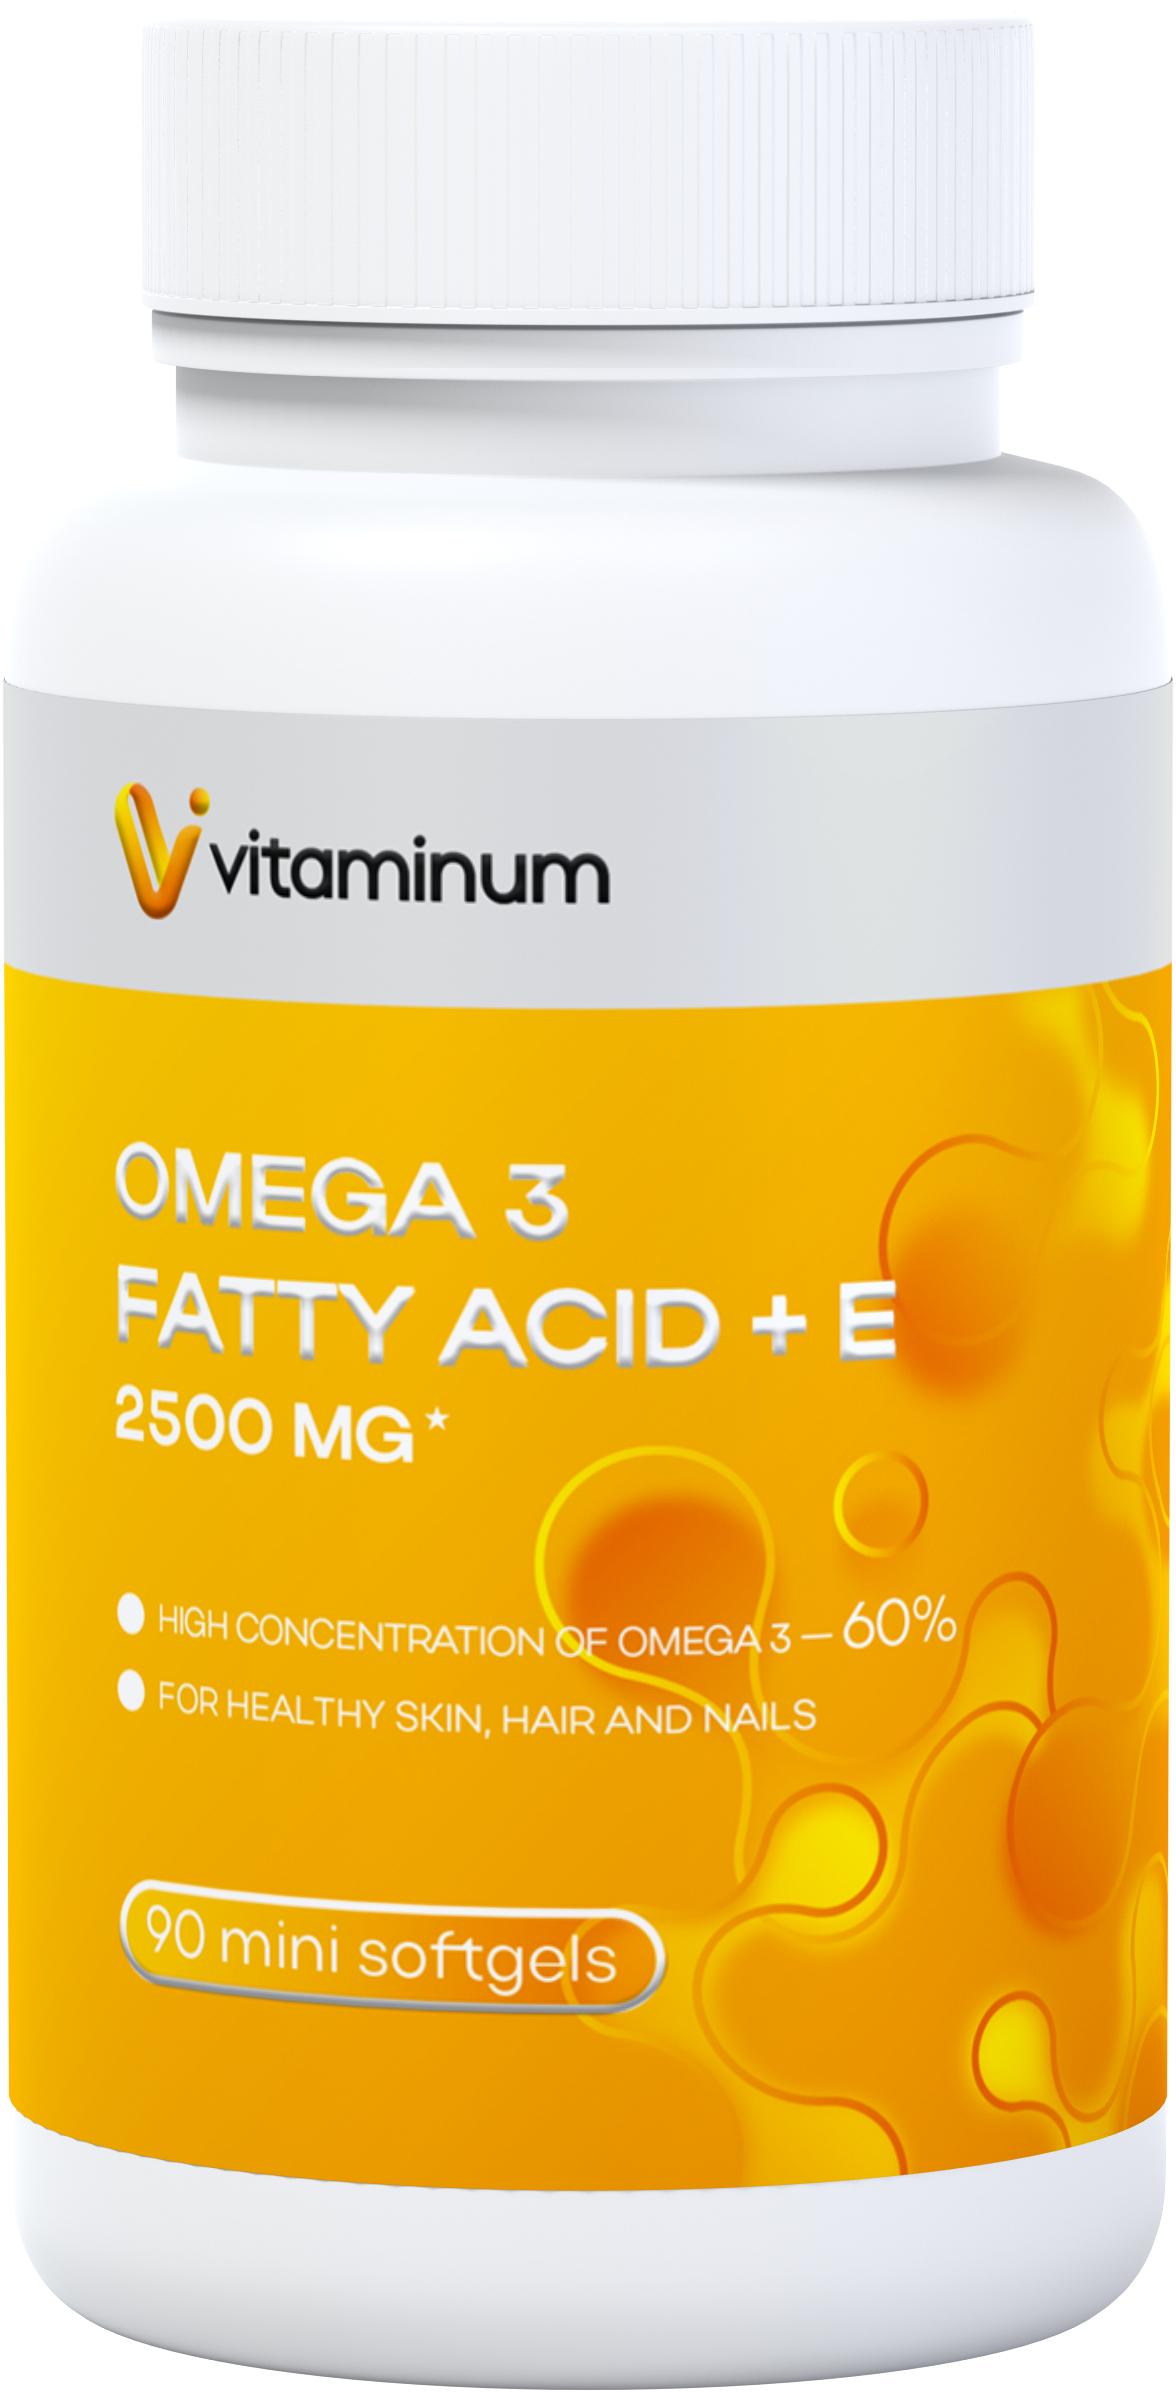  Vitaminum ОМЕГА 3 60% + витамин Е (2500 MG*) 90 капсул 700 мг   в Джанкое